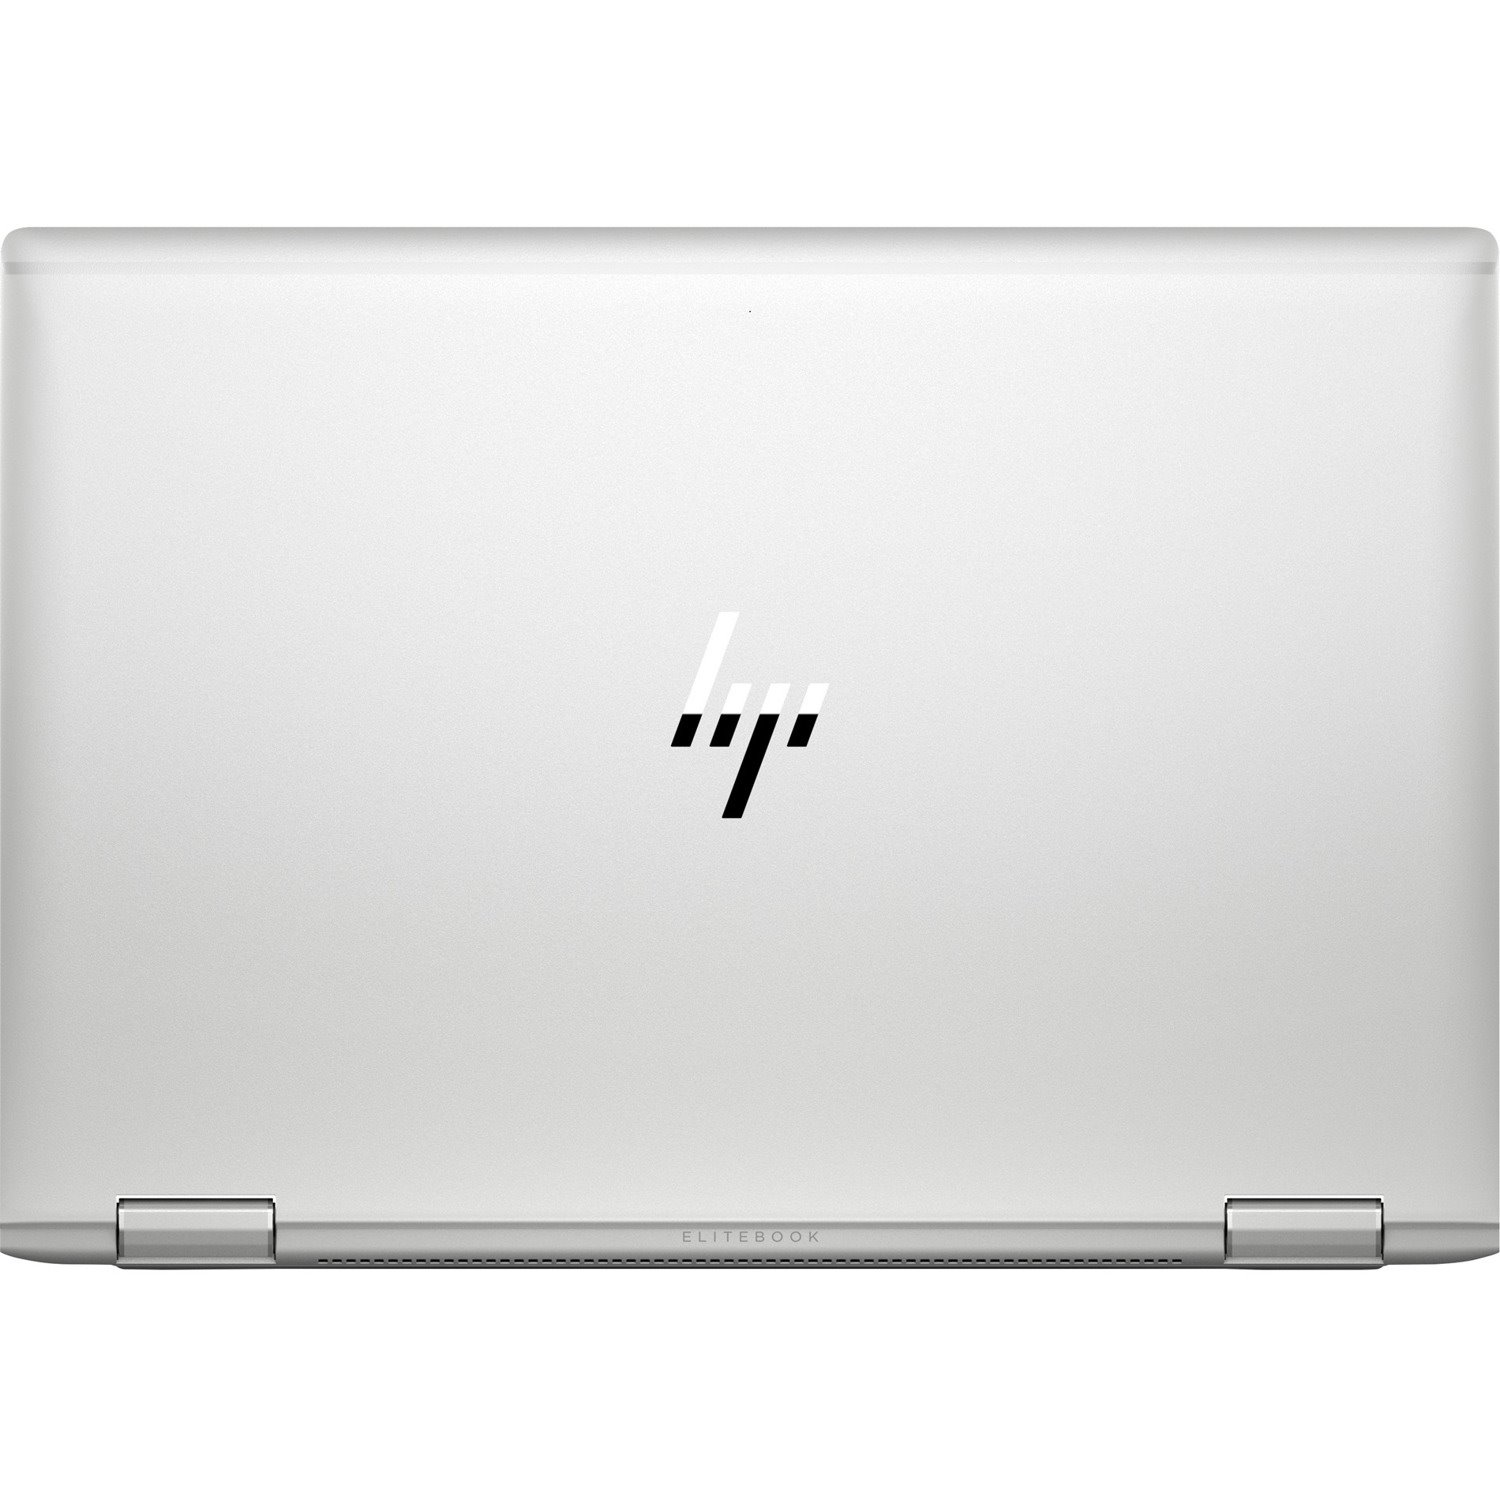 HP EliteBook x360 1040 G6 14" Touchscreen Convertible 2 in 1 Notebook - Intel Core i5 8th Gen i5-8265U Quad-core (4 Core) 1.60 GHz - 8 GB Total RAM - 256 GB SSD